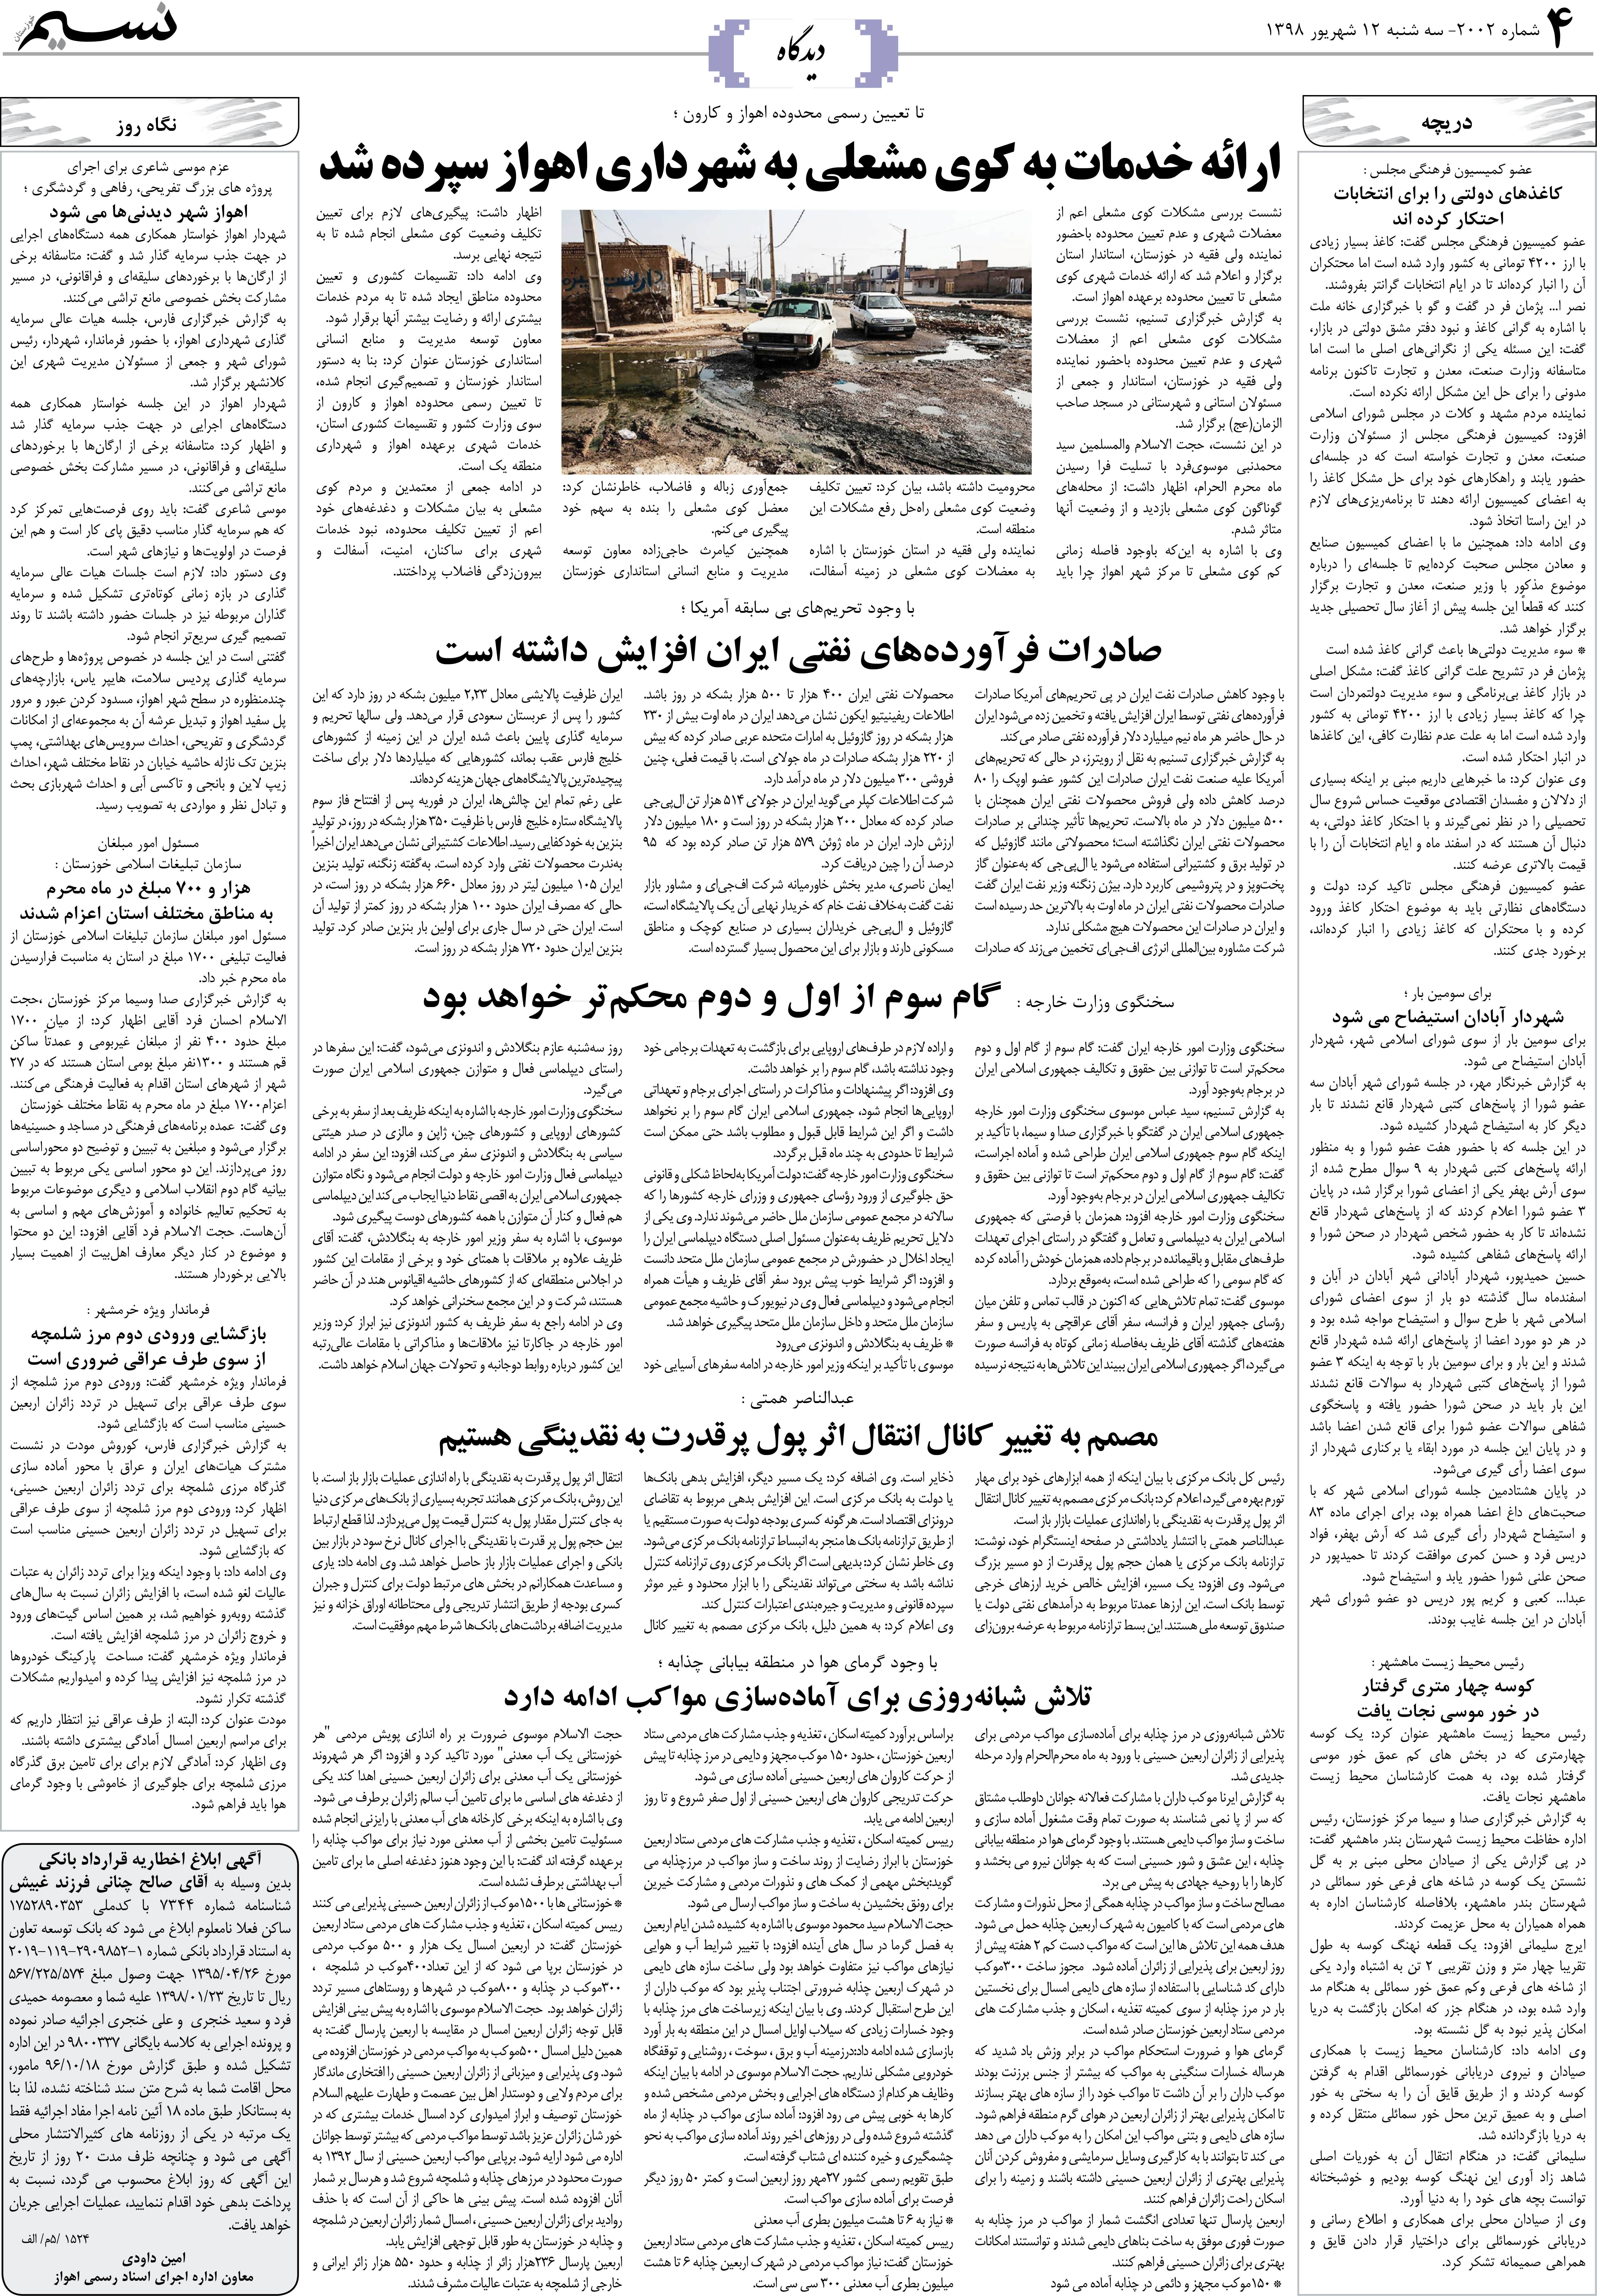 صفحه دیدگاه روزنامه نسیم شماره 2002